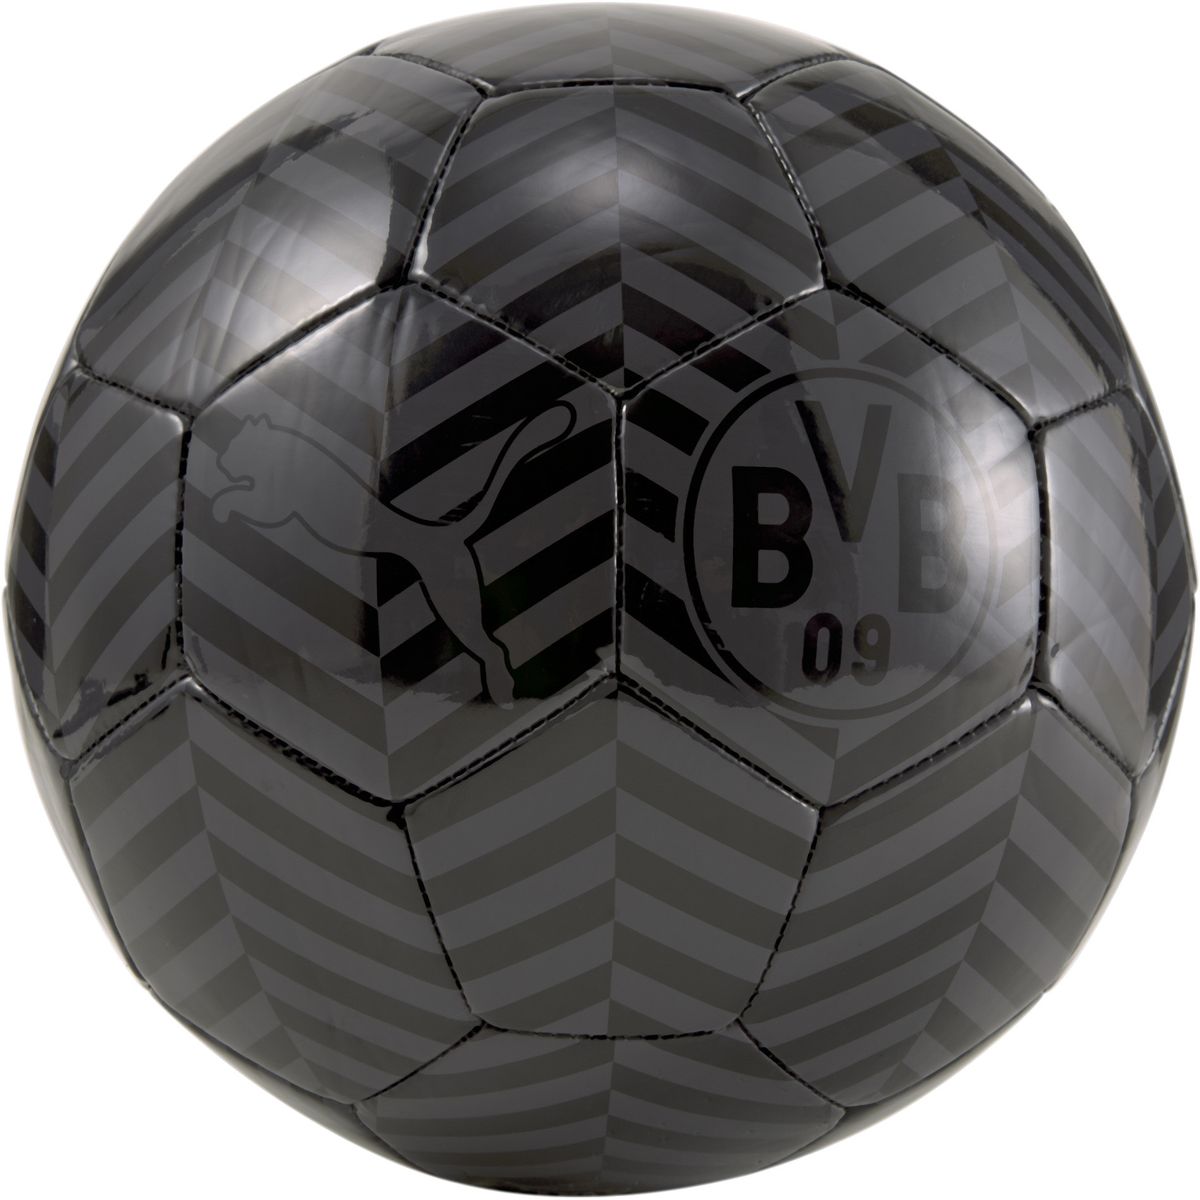 Puma BVB FtblCore Fan Ball Outdoor-Fußball